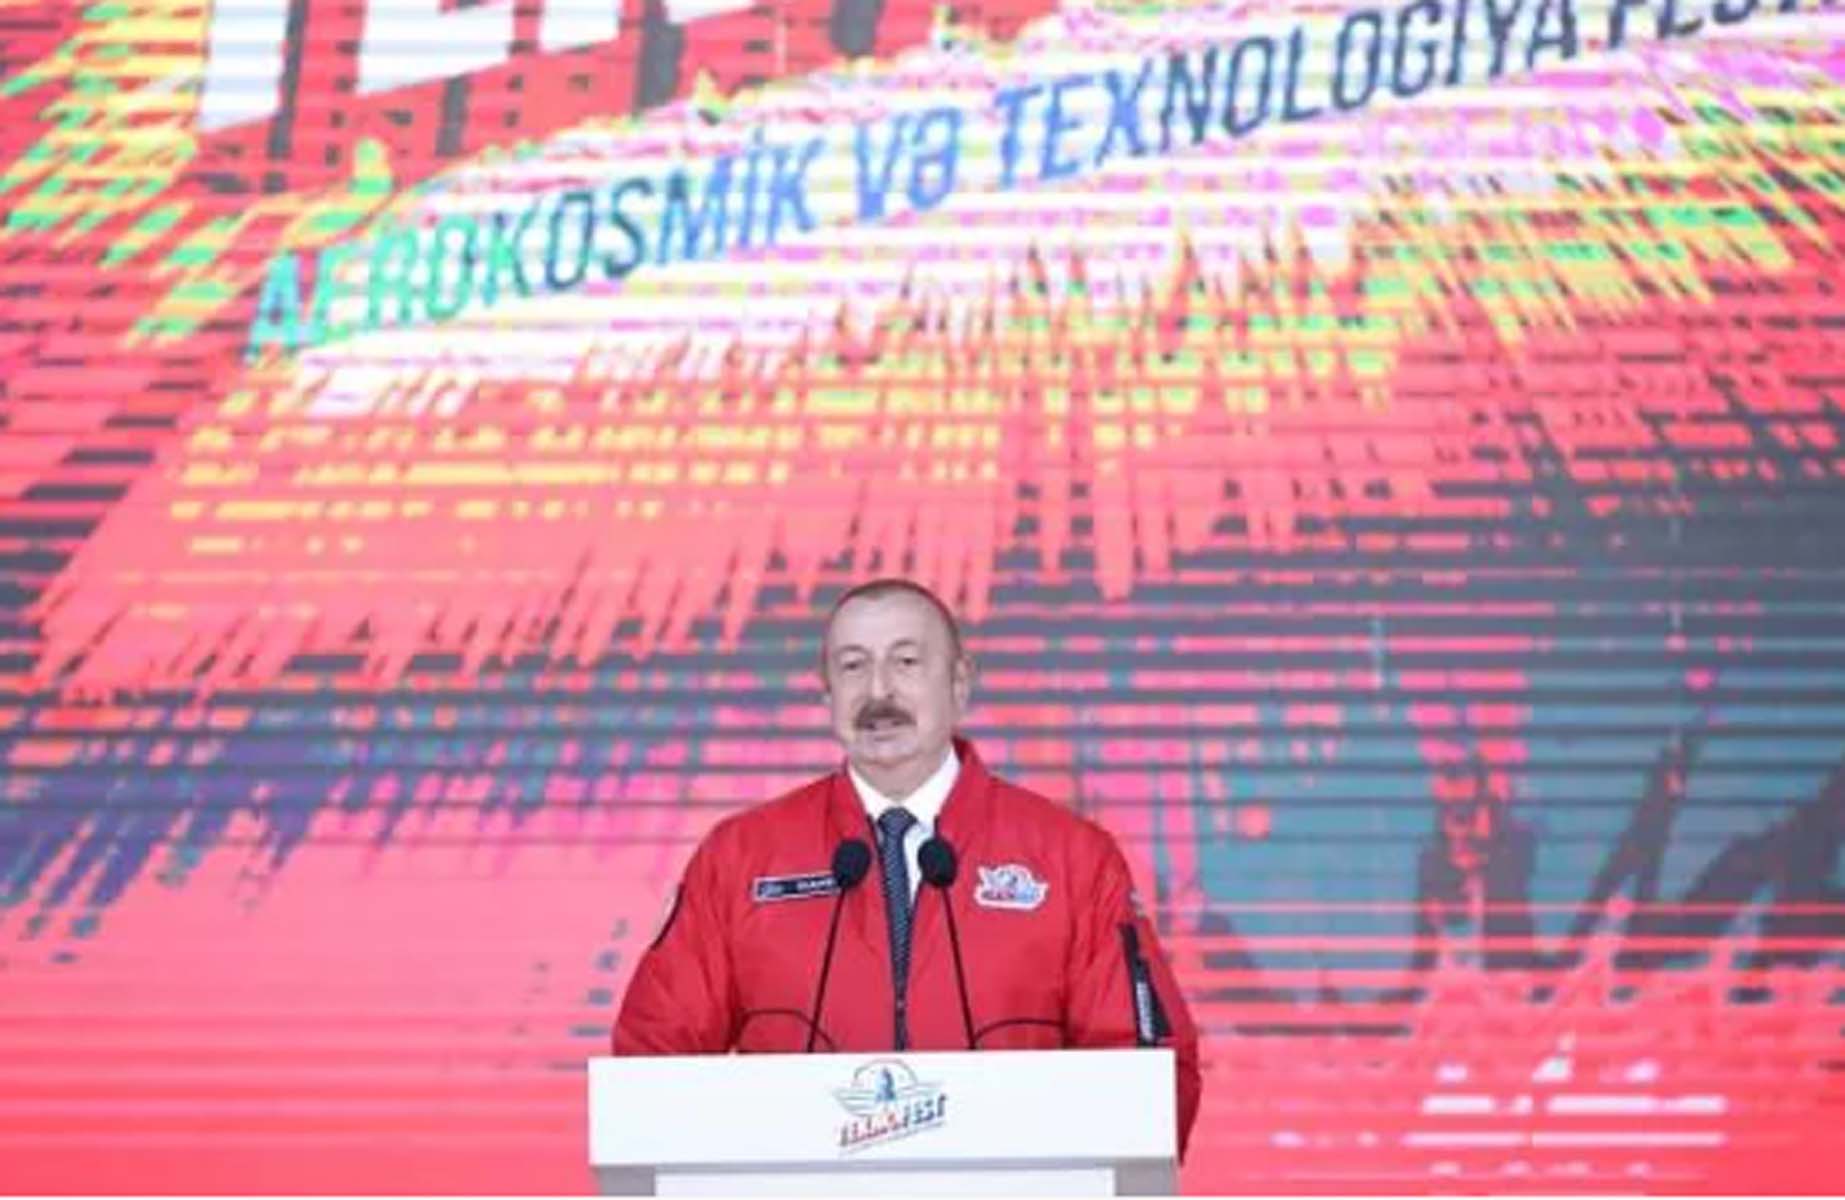 Azerbaycan'da TEKNOFEST heyecanı! Cumhurbaşkanı Recep Tayyip Erdoğan'dan önemli açıklamalar